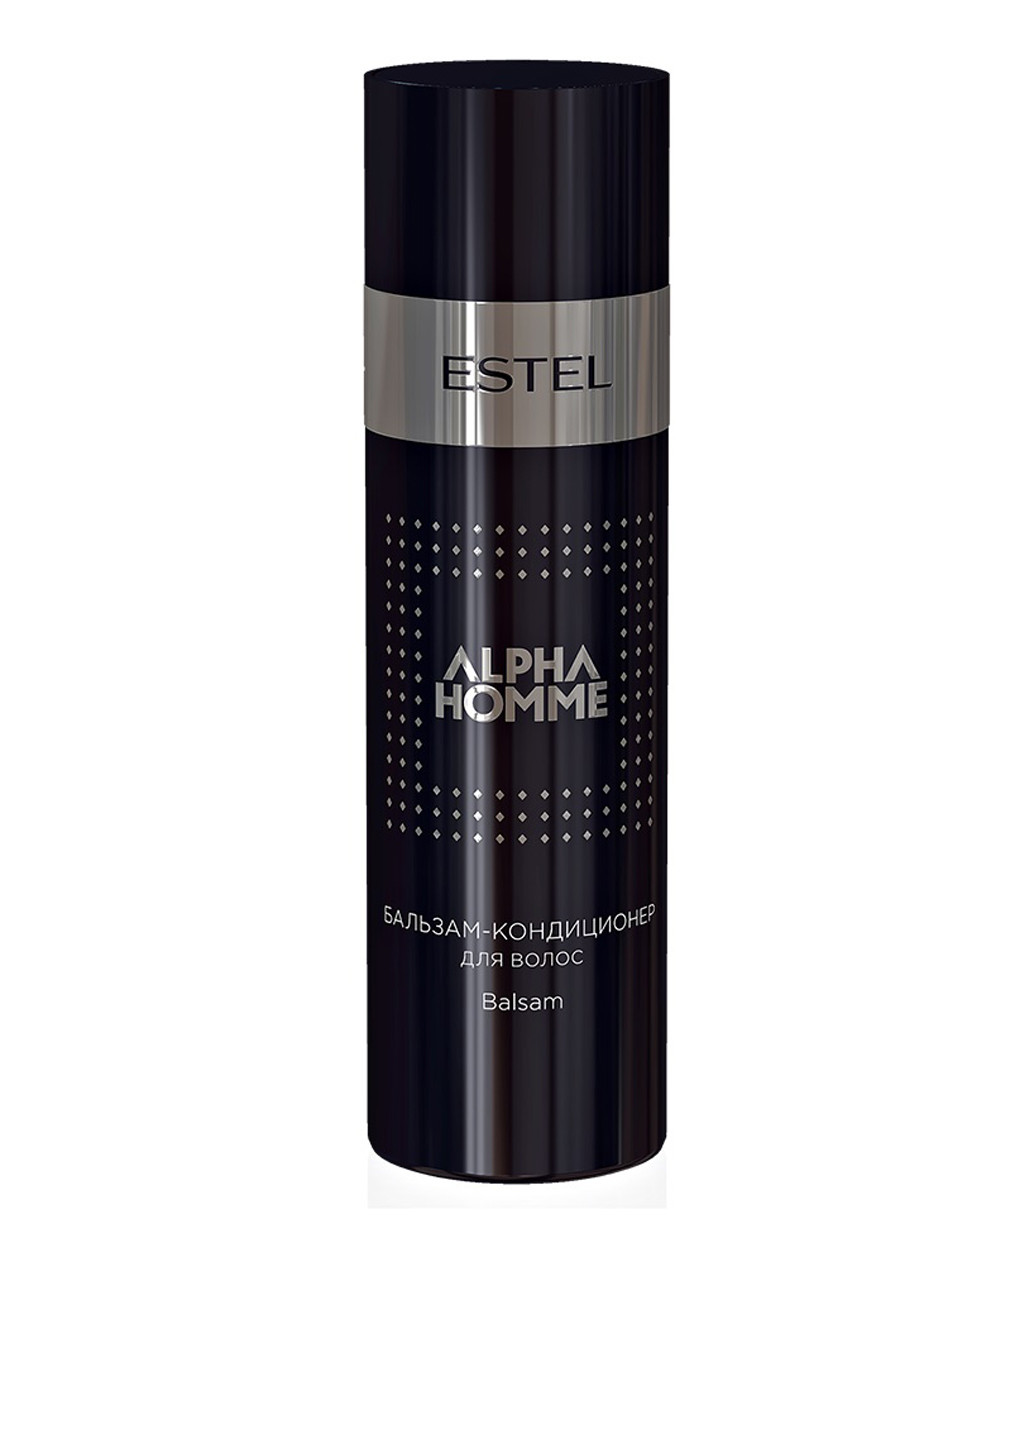 Бальзам-кондиционер для волос Alpha Homme Pro, 200 мл Estel Professional (162581336)